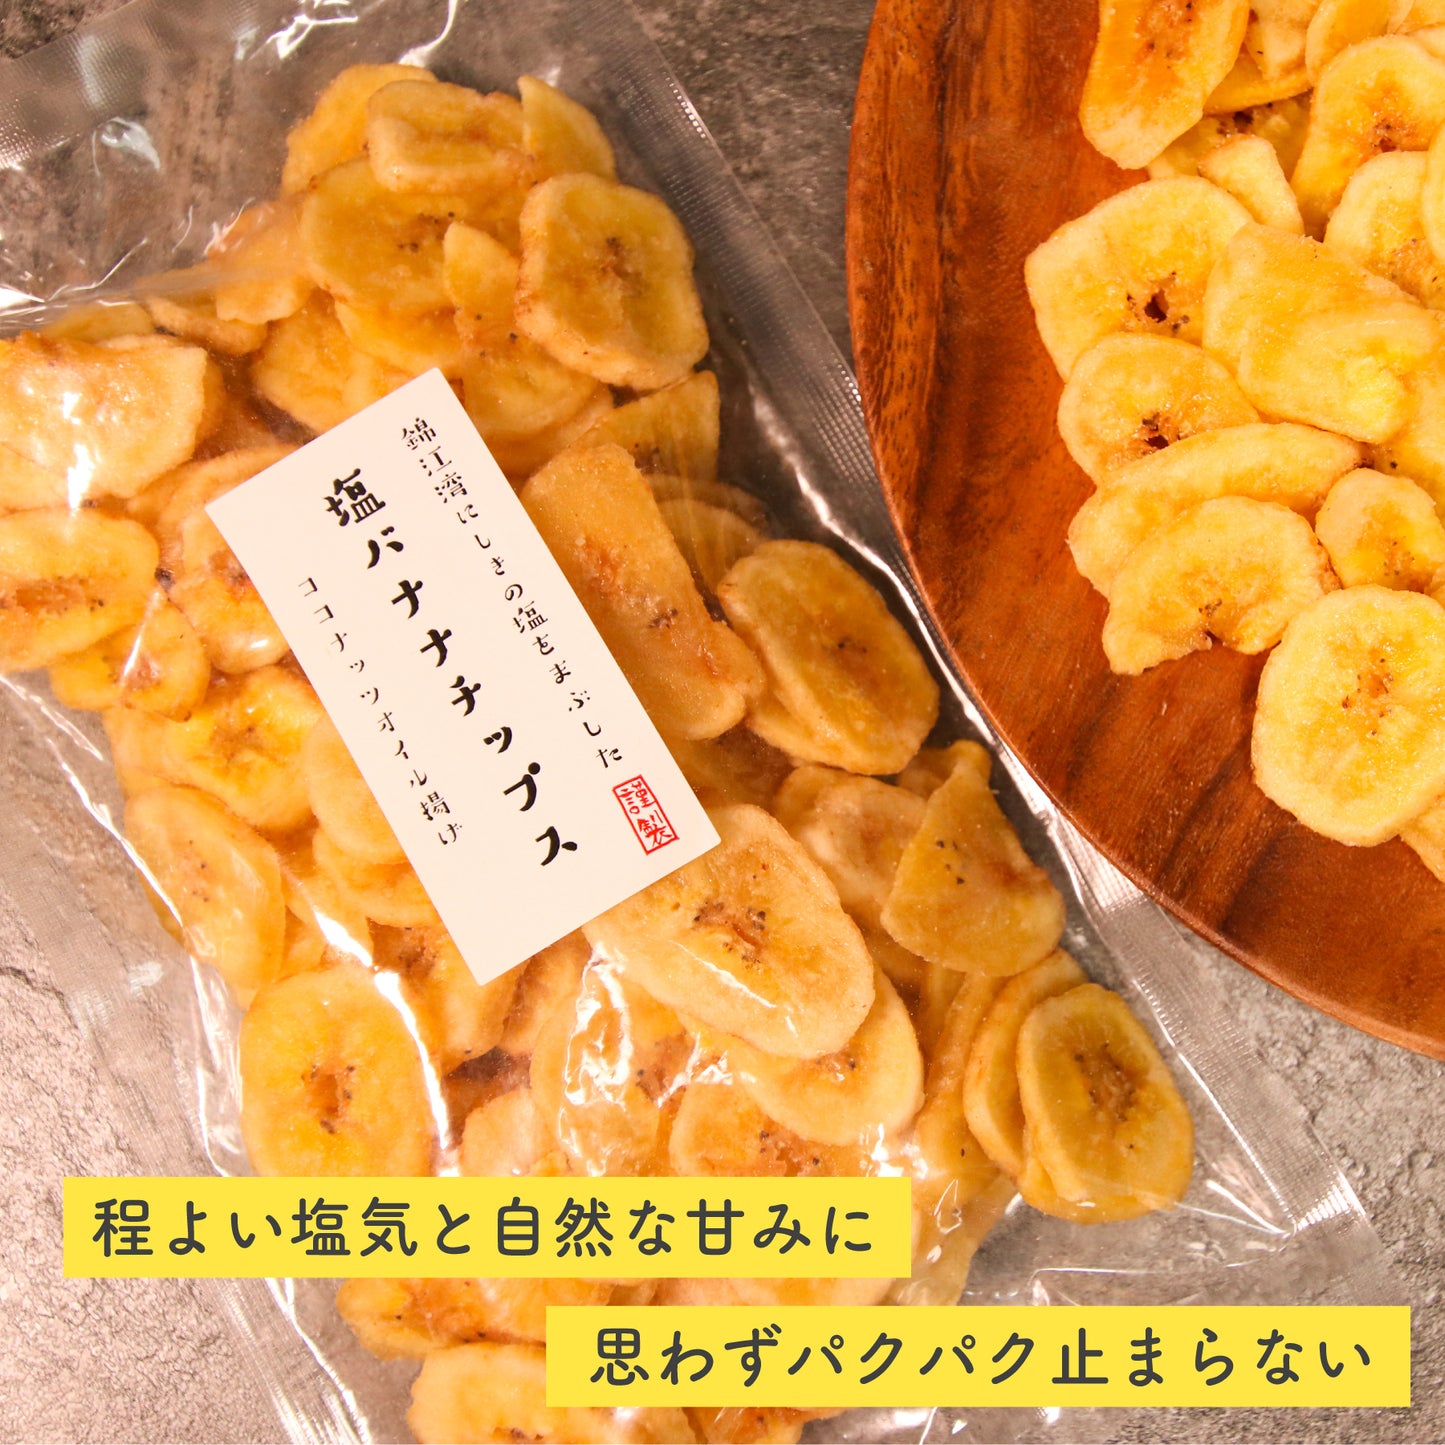 塩バナナチップス 140g 鹿児島錦江湾の塩 ココナッツオイル使用